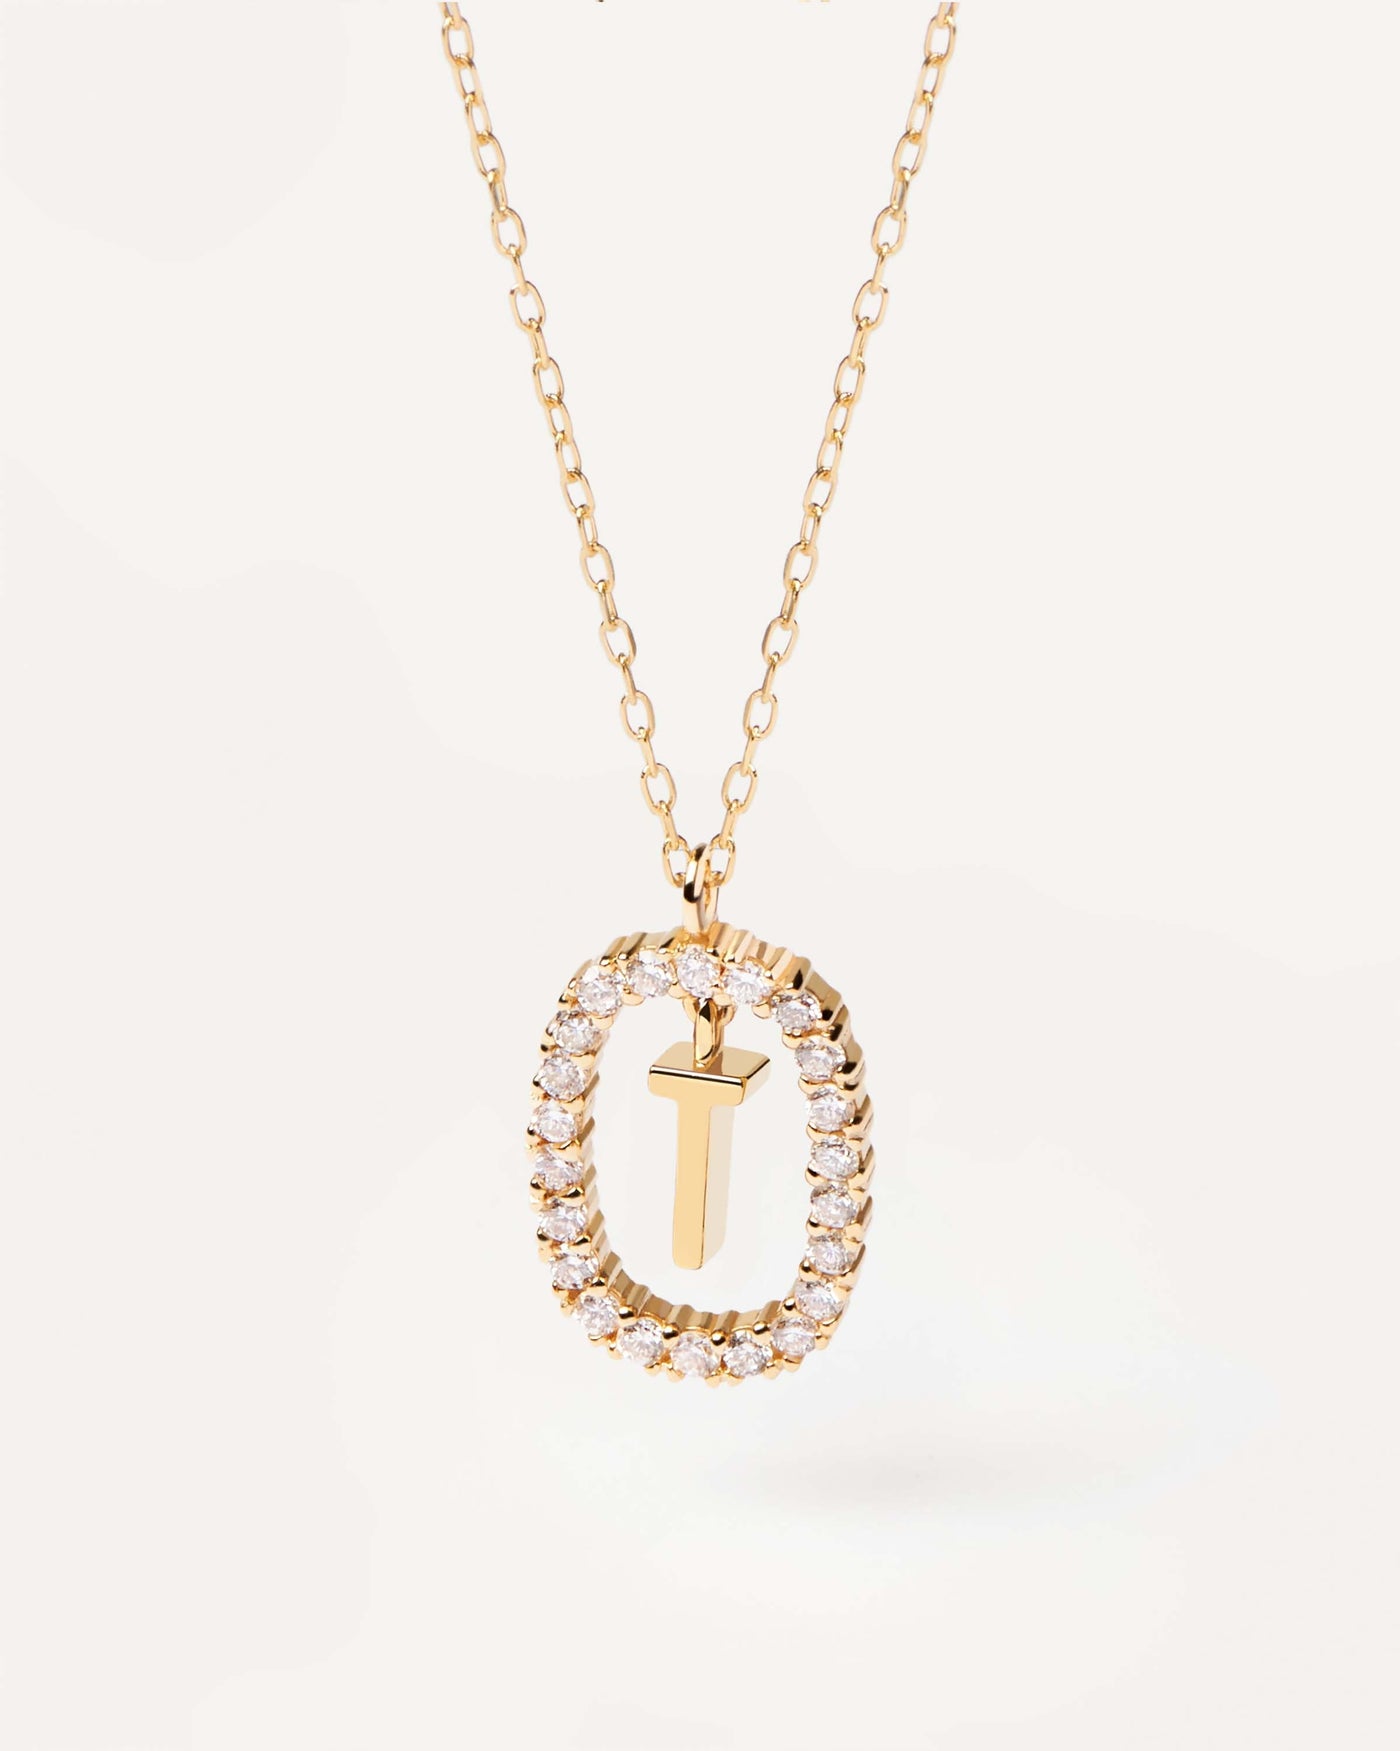 GoldHalskette mit Diamanten Buchstabe T. Erstes T-Halskette in solid. Erhalten Sie die neuesten Produkte von PDPAOLA. Geben Sie Ihre Bestellung sicher auf und erhalten Sie diesen Bestseller.